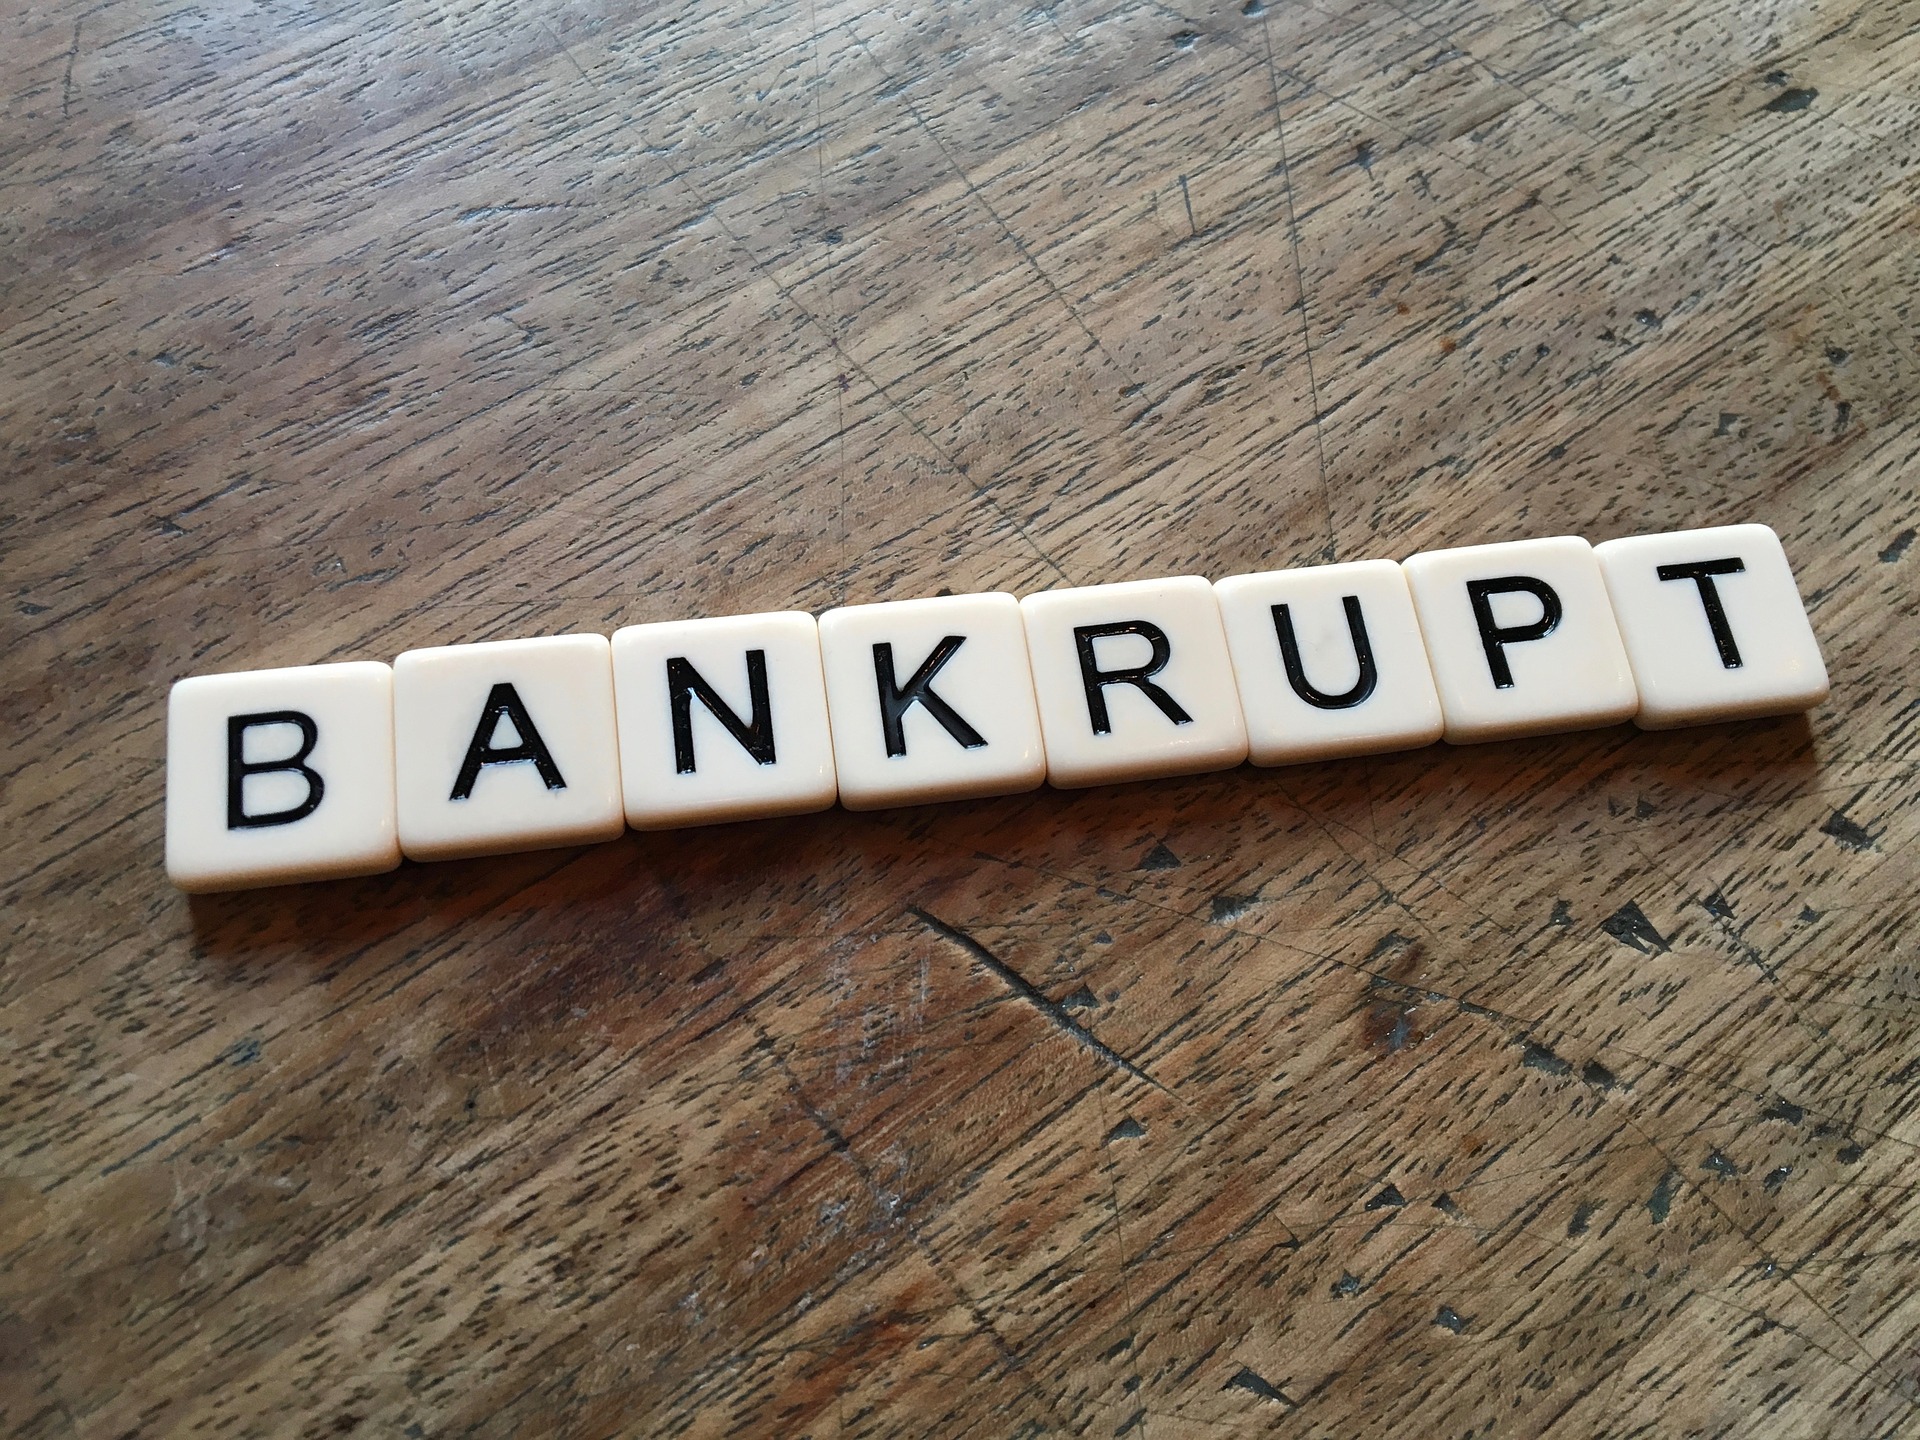 Bankruptcy myths